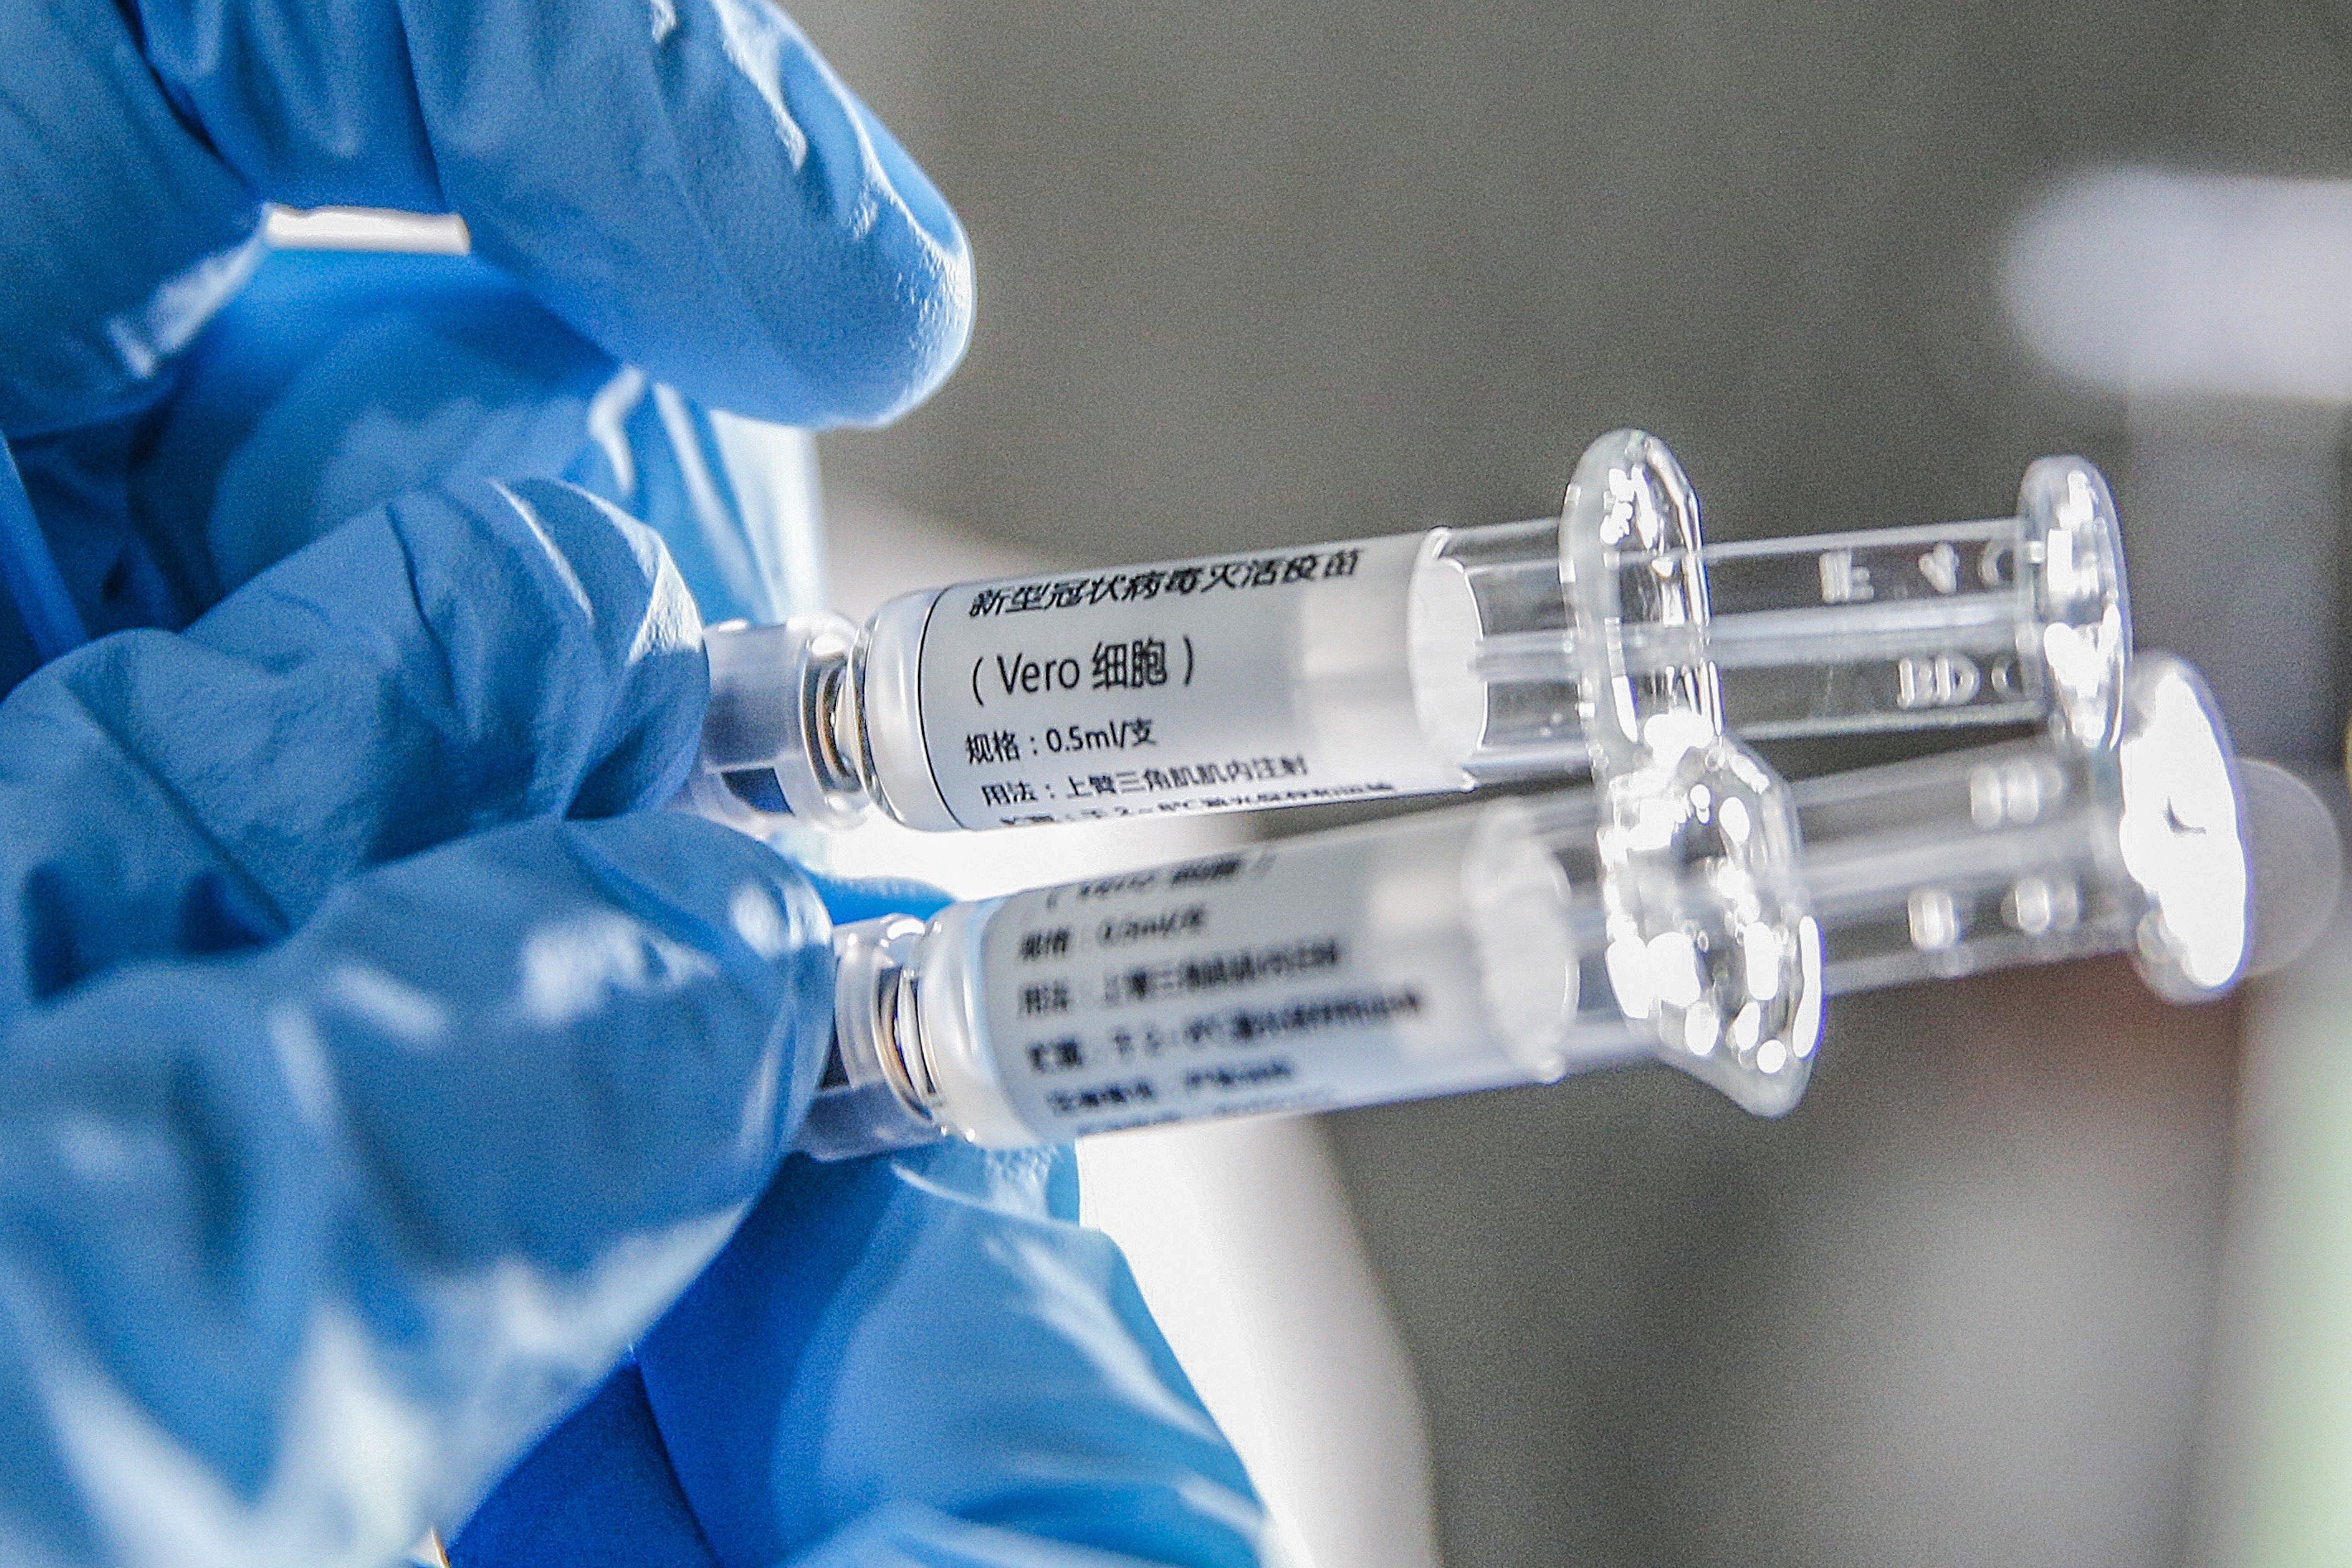 La carrera por encontrar una vacuna contra la Covid-19 se acelera | Ciencia  | EL PAÍS